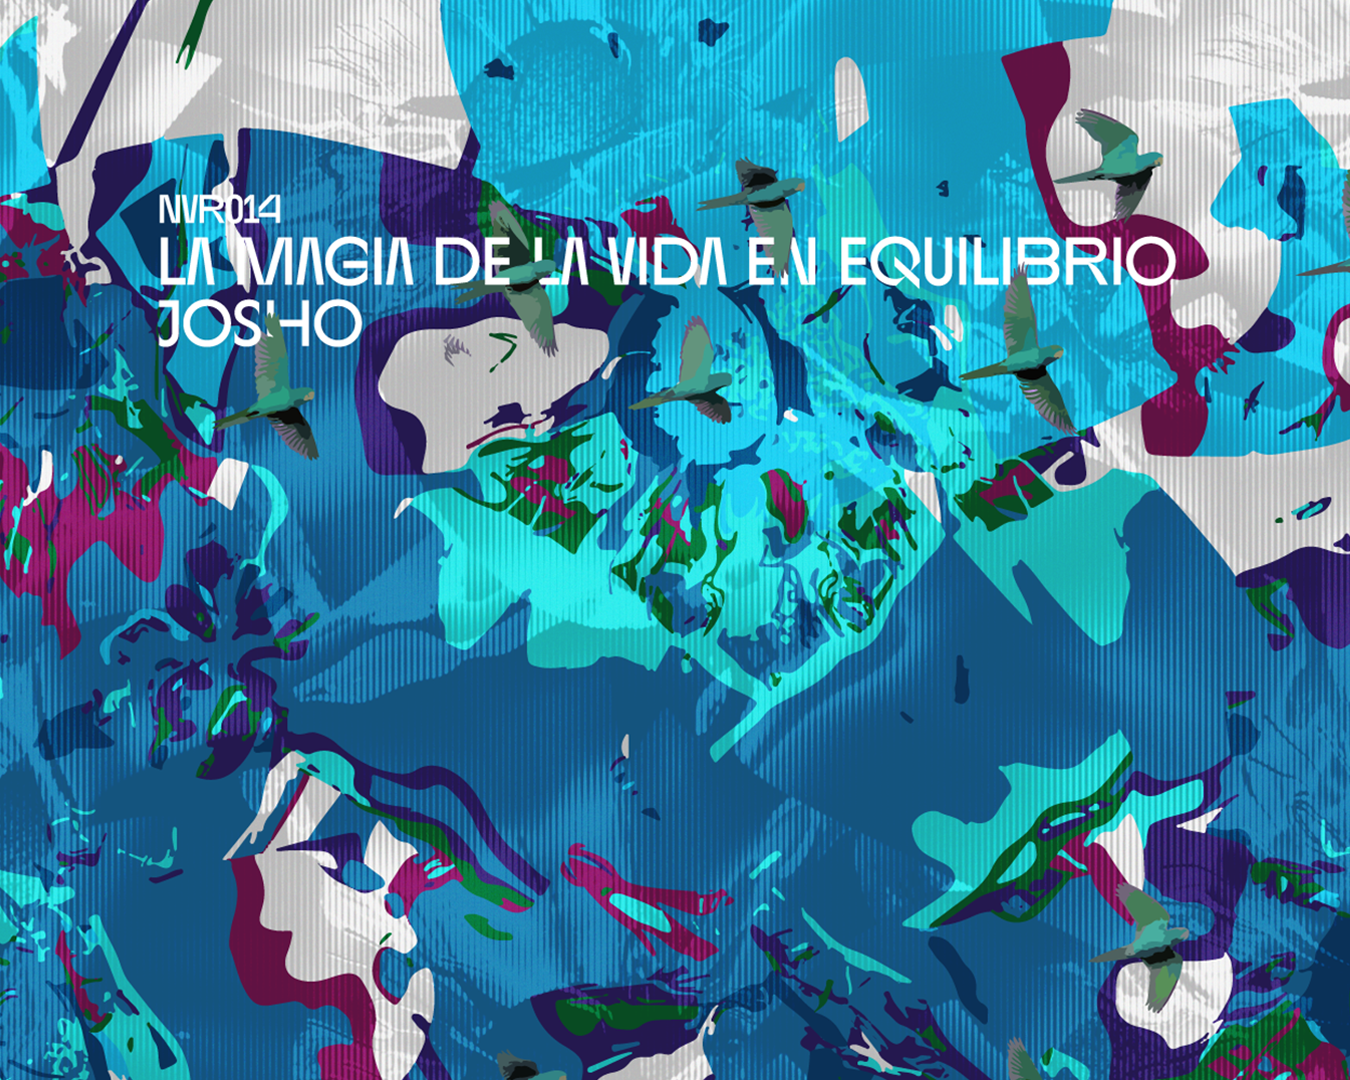 JOSHO presenta su nuevo EP "La Magia de la Vida en Equilibrio" en el sello NVRCLOSE